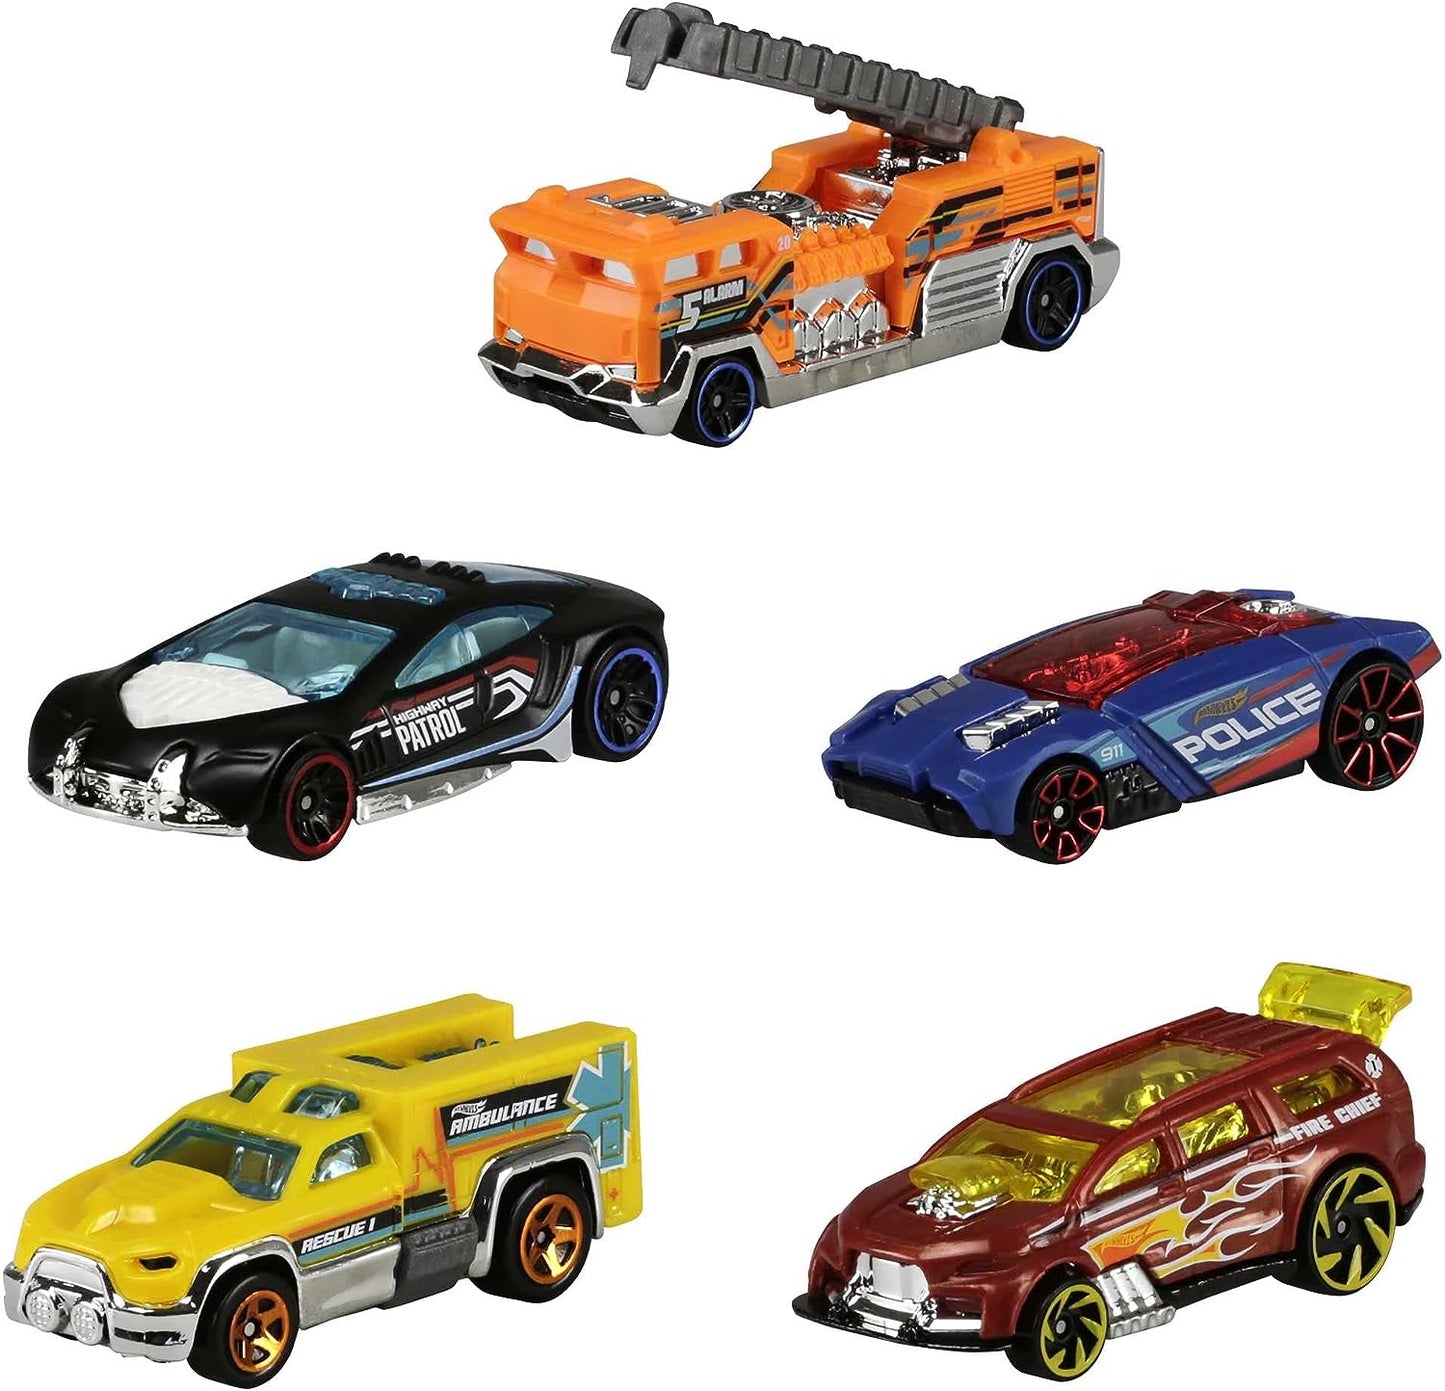 Hot Wheels Conjunto de 5 carros de brinquedo, estilos variados de corrida extrema, veículos de brinquedo em escala 1:64 com detalhes e decorações realistas, carros colecionáveis para crianças de 3 anos ou mais, os estilos podem variar, 1806